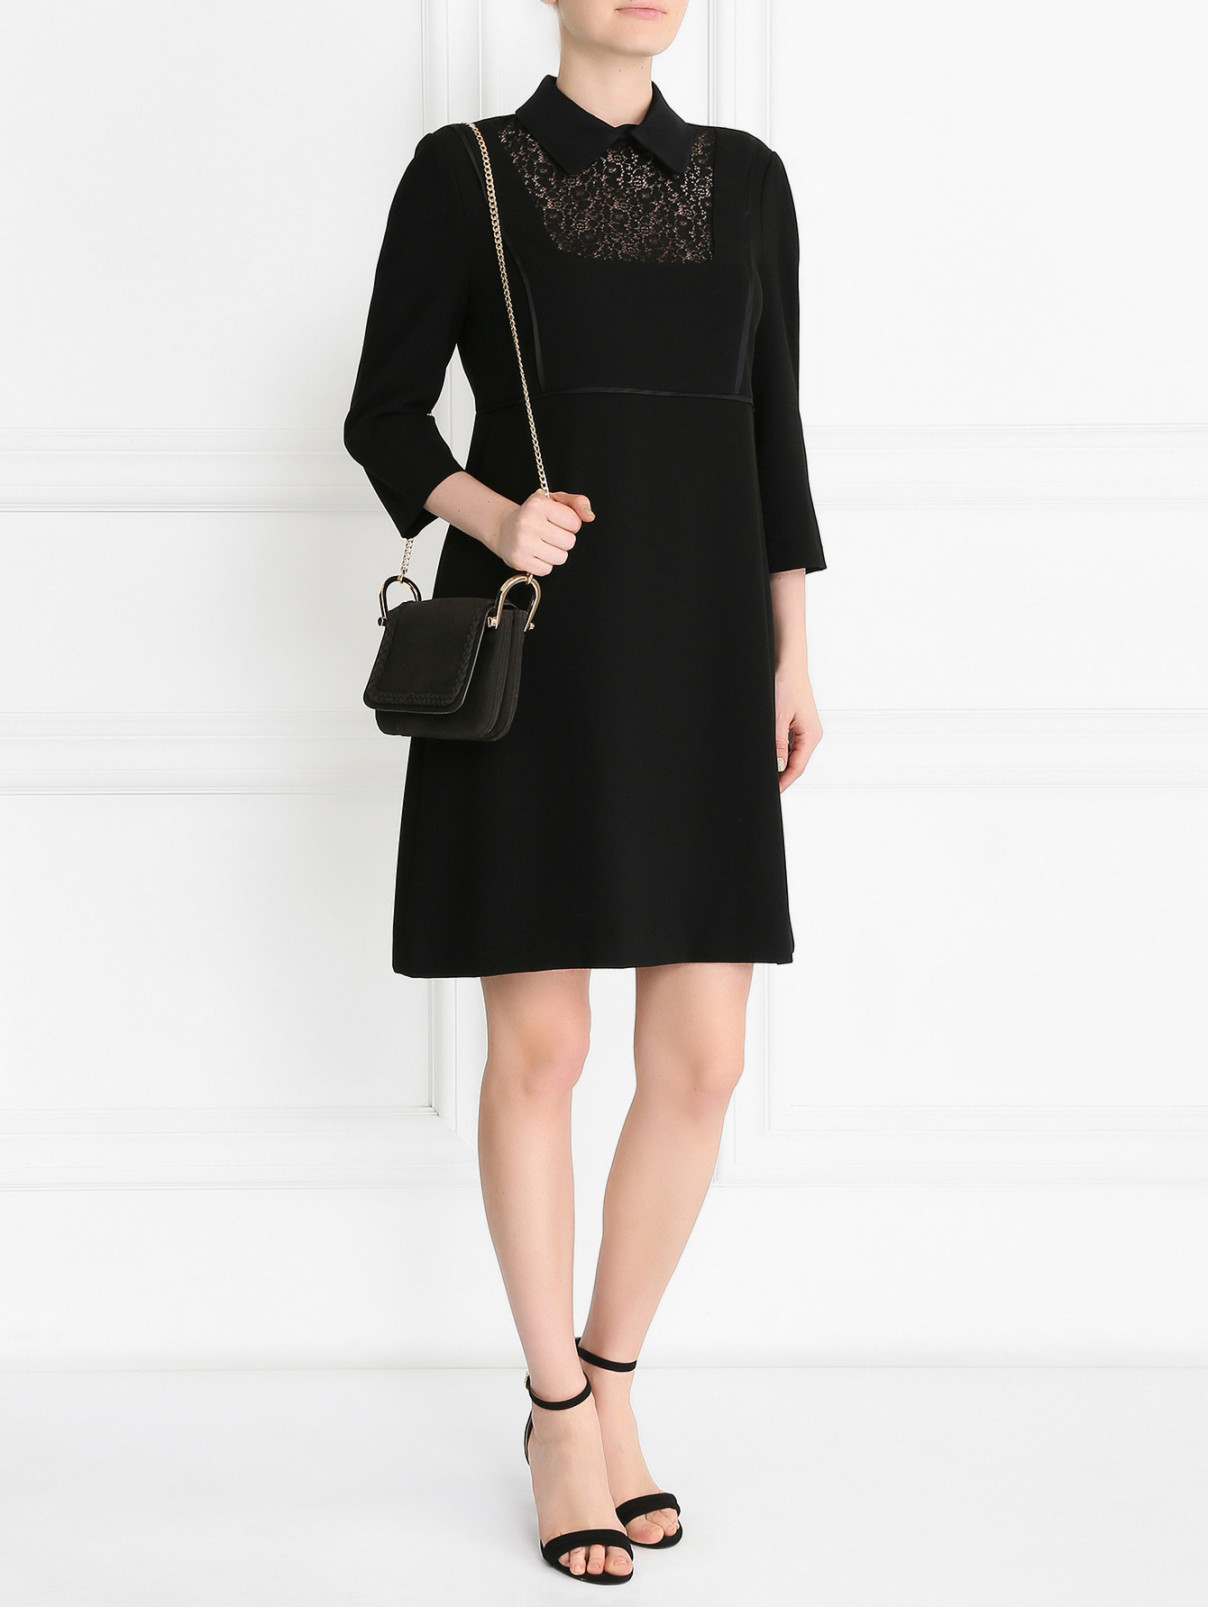 Платье-мини с кружевной вставкой Tara Jarmon  –  Модель Общий вид  – Цвет:  Черный